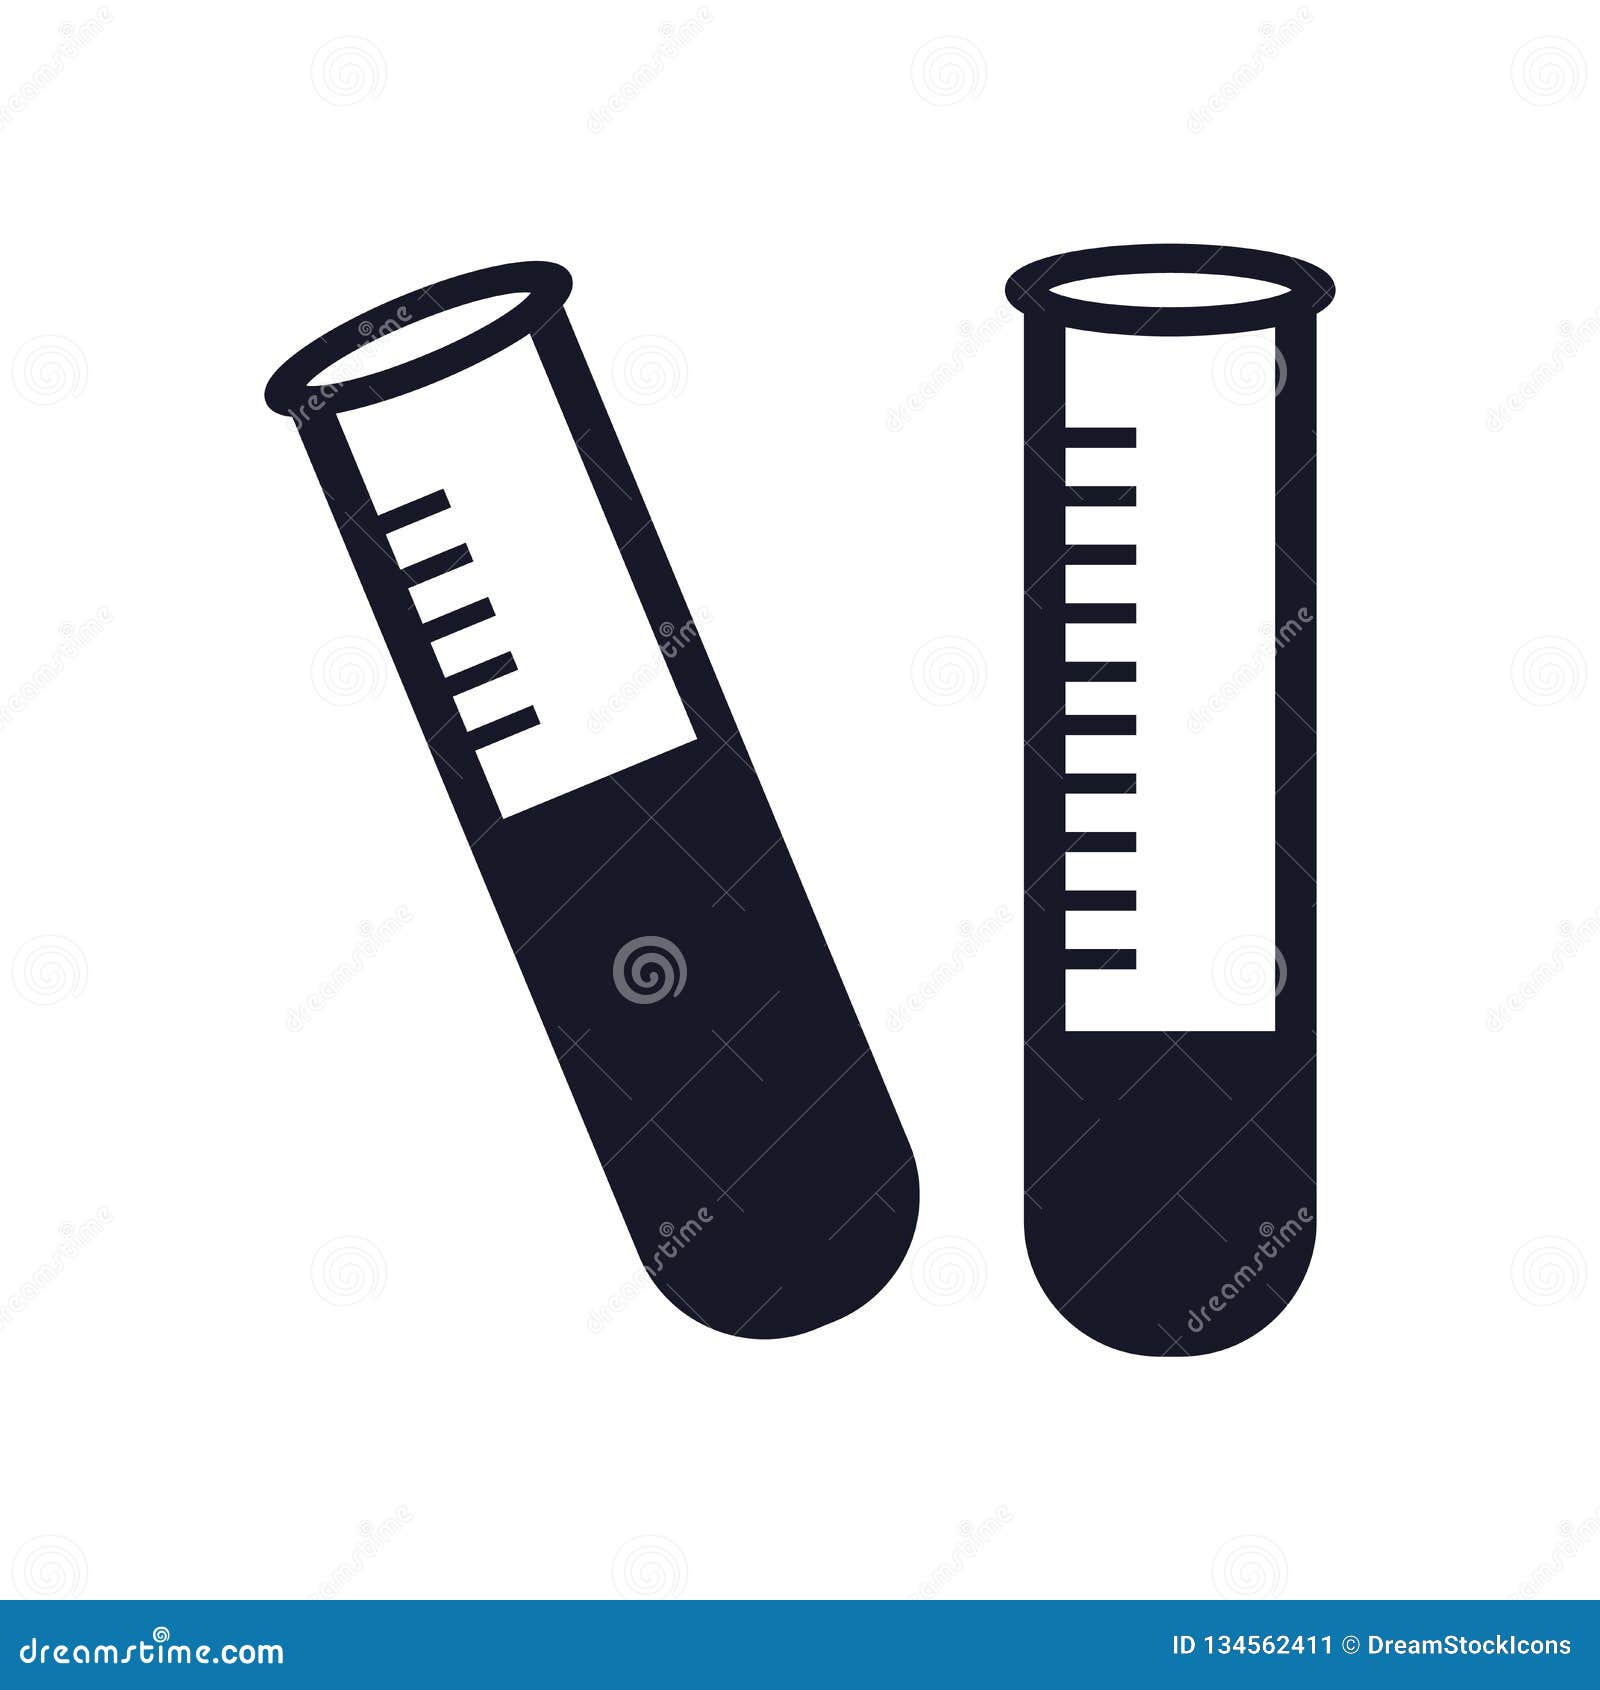 Test tube là một công cụ quan trọng trong thí nghiệm. Hãy xem hình liên quan đến test tube rất thú vị và giúp bạn hiểu rõ hơn về ứng dụng của chúng.